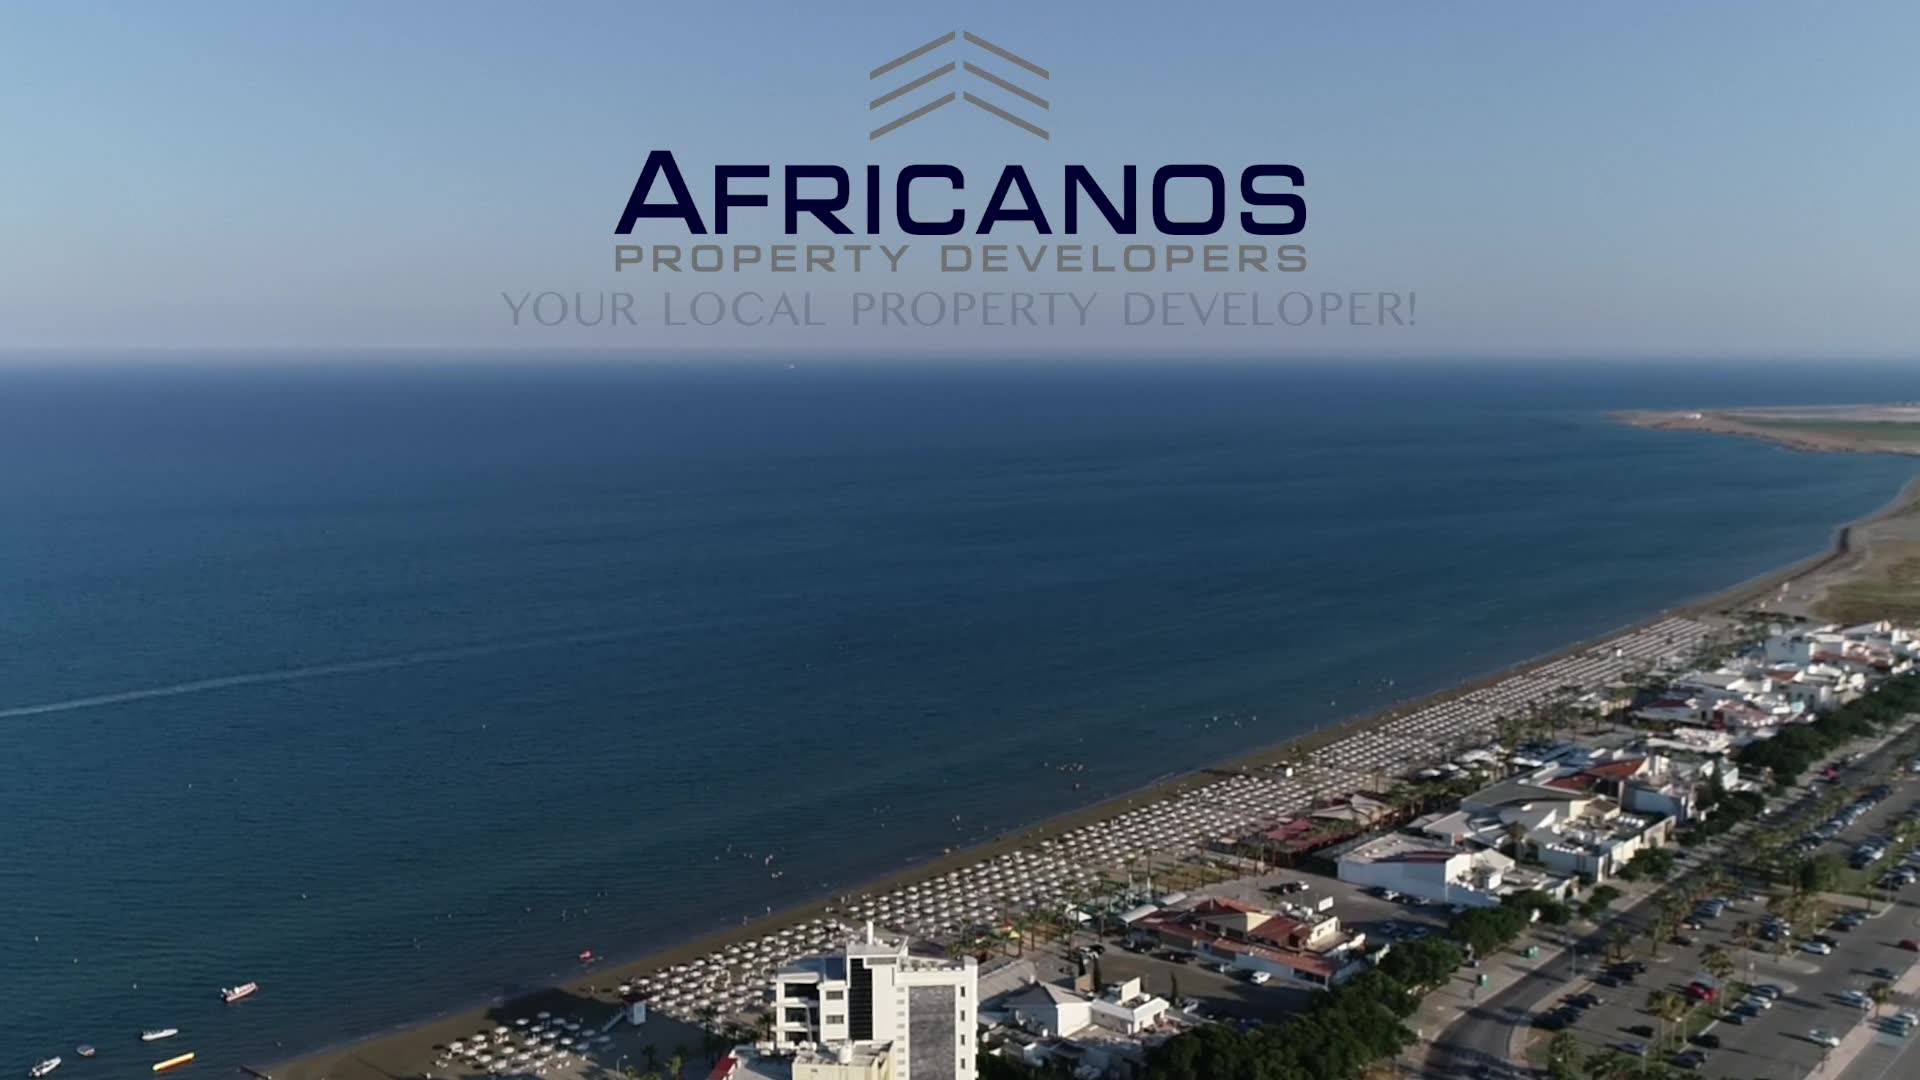 Ζητείται Πολιτικός Μηχανικός για να εργοδοτηθεί άμεσα στον Όμιλο Africanos Property Developers